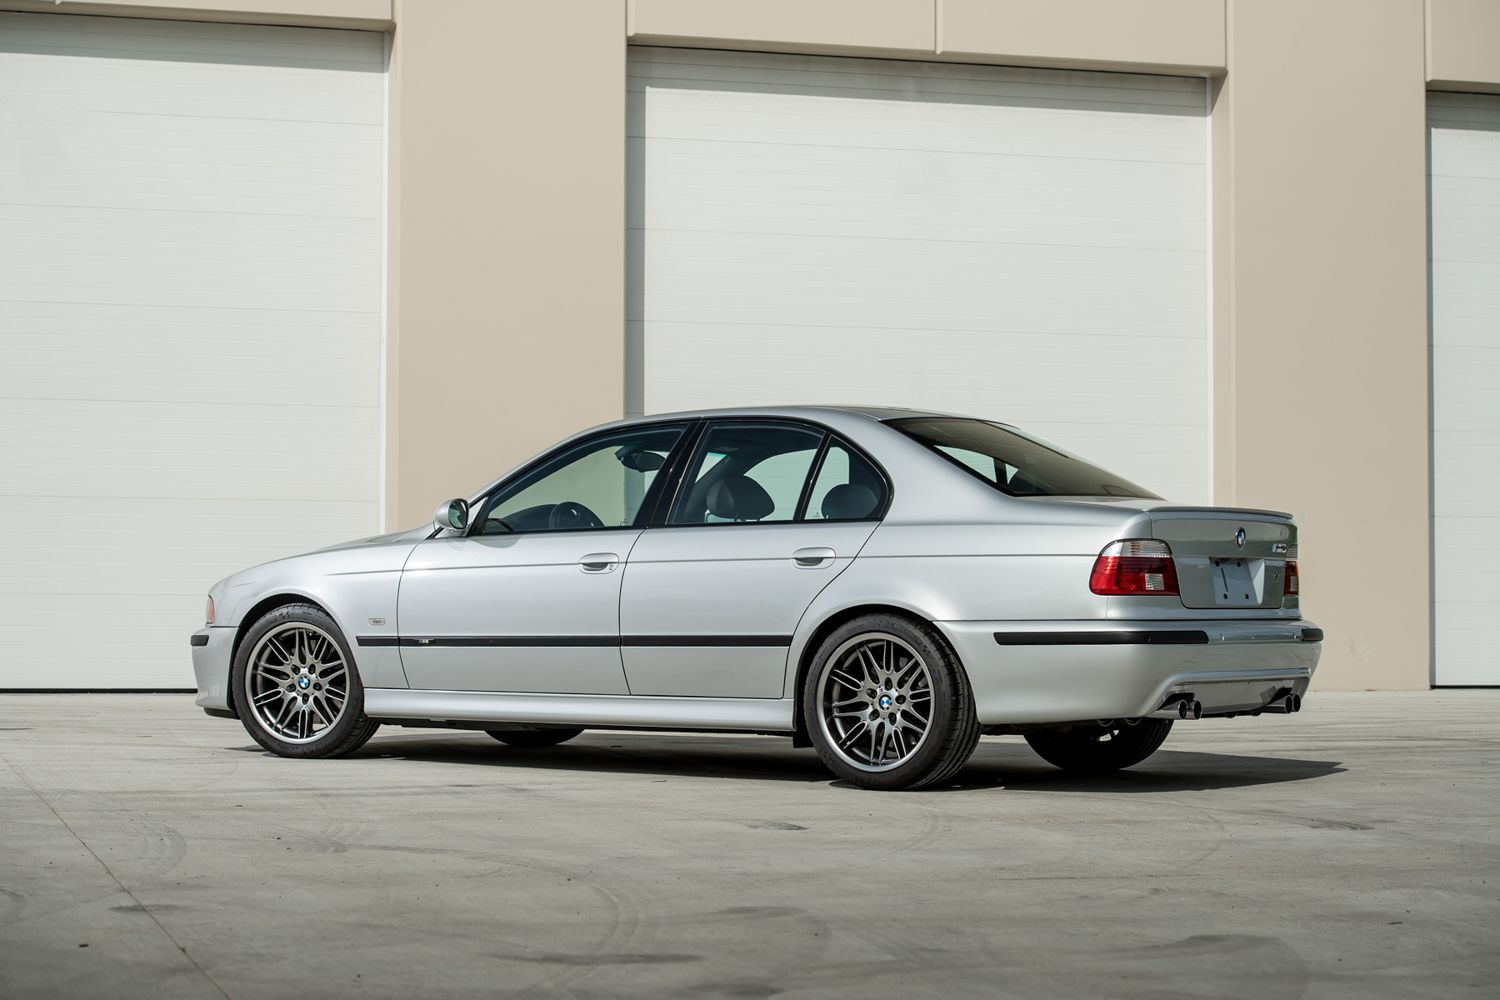 BMW E39 M5 for sale